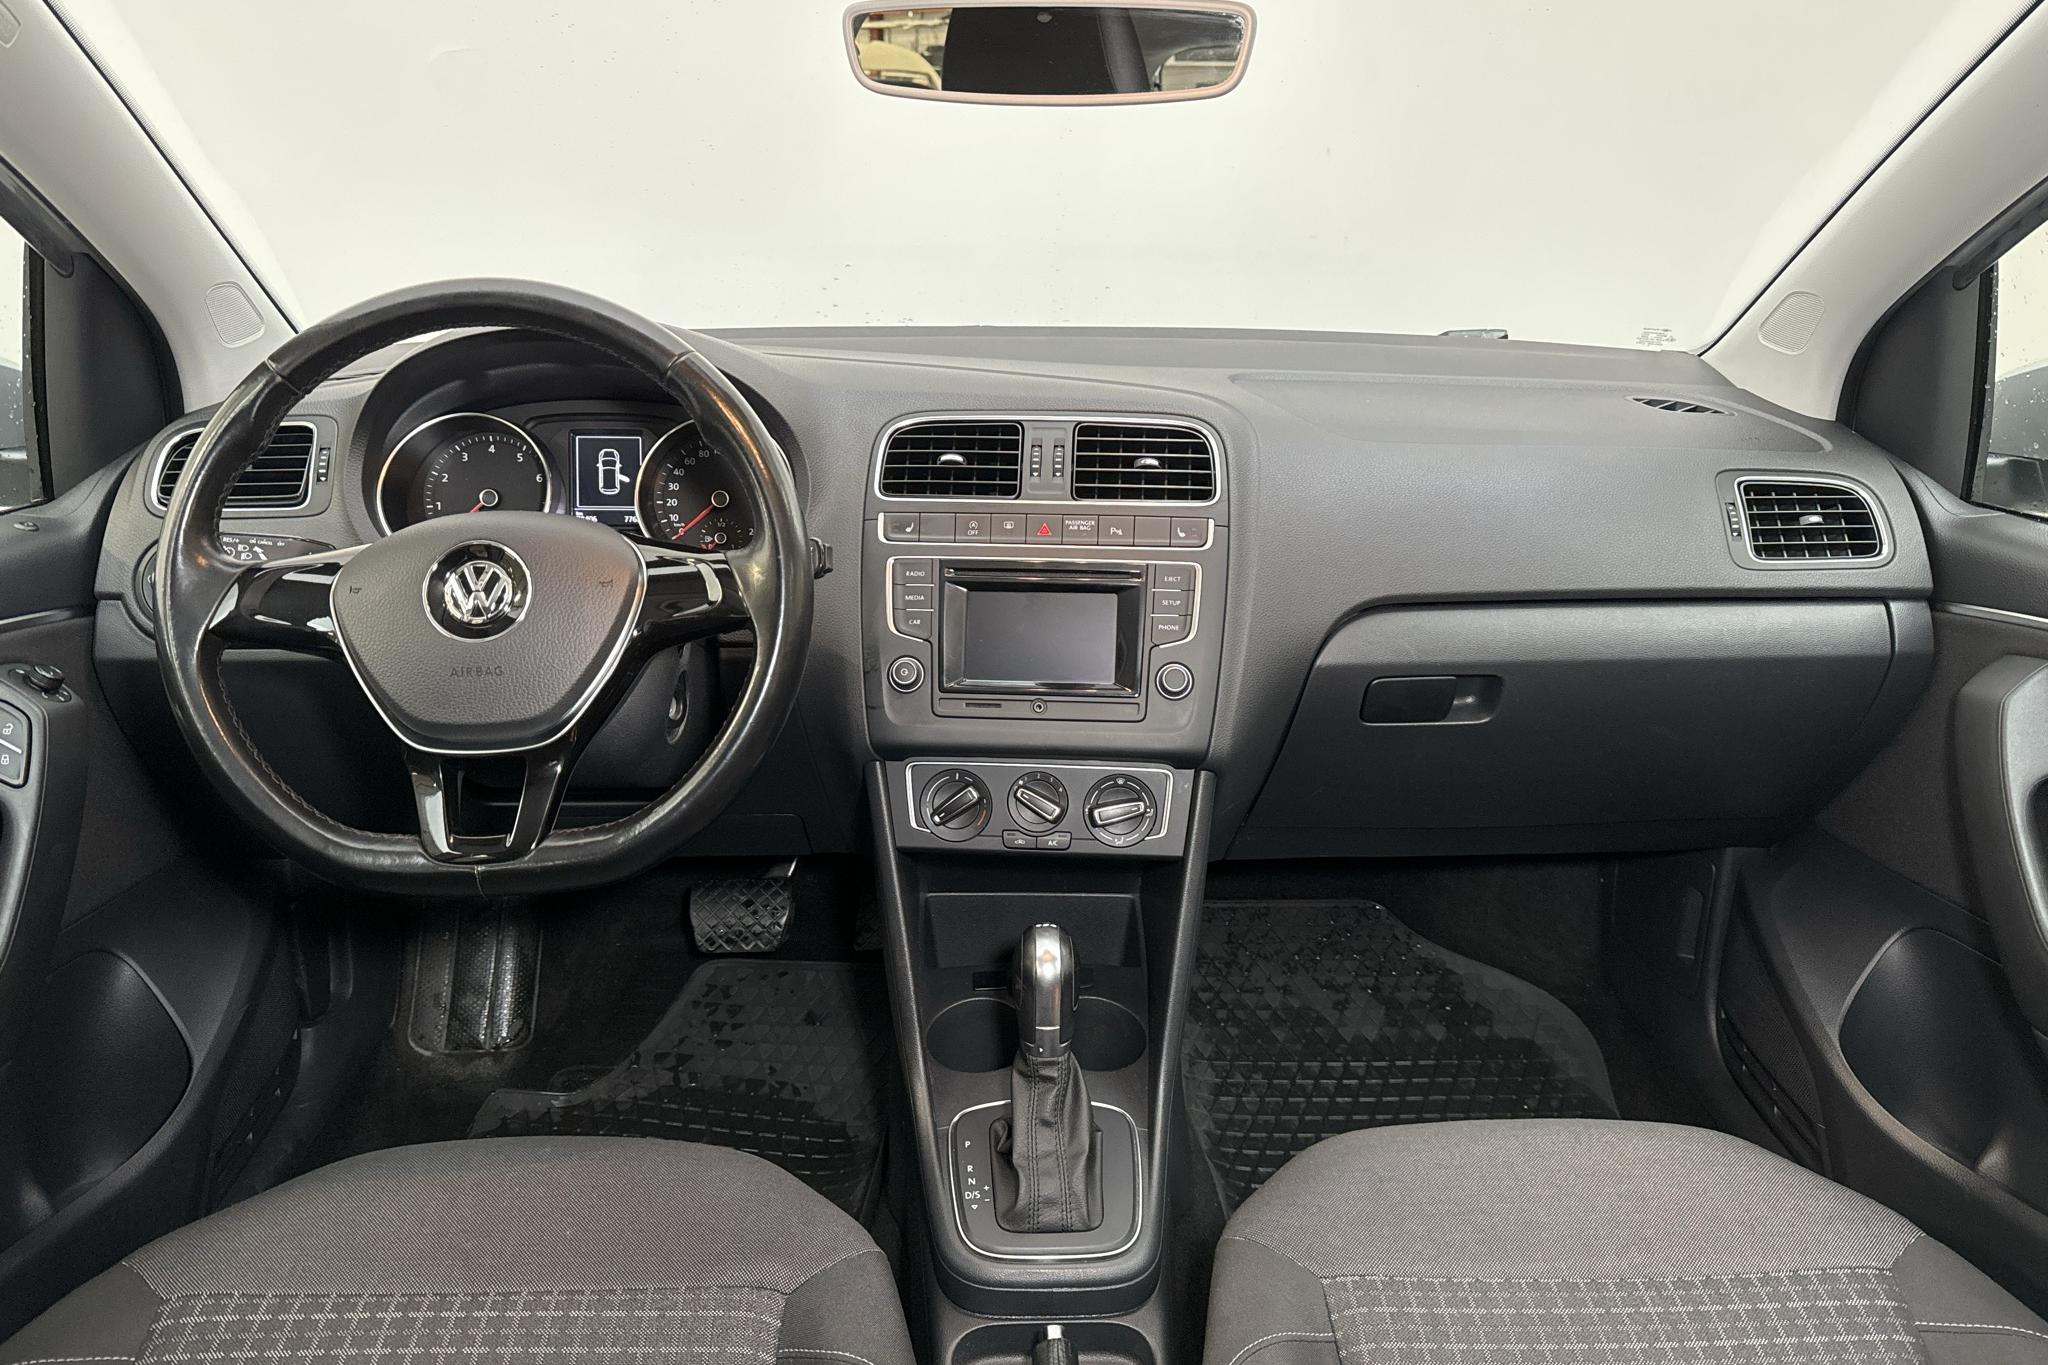 VW Polo 1.2 TSI 5dr (90hk) - 78 400 km - Automatic - silver - 2017